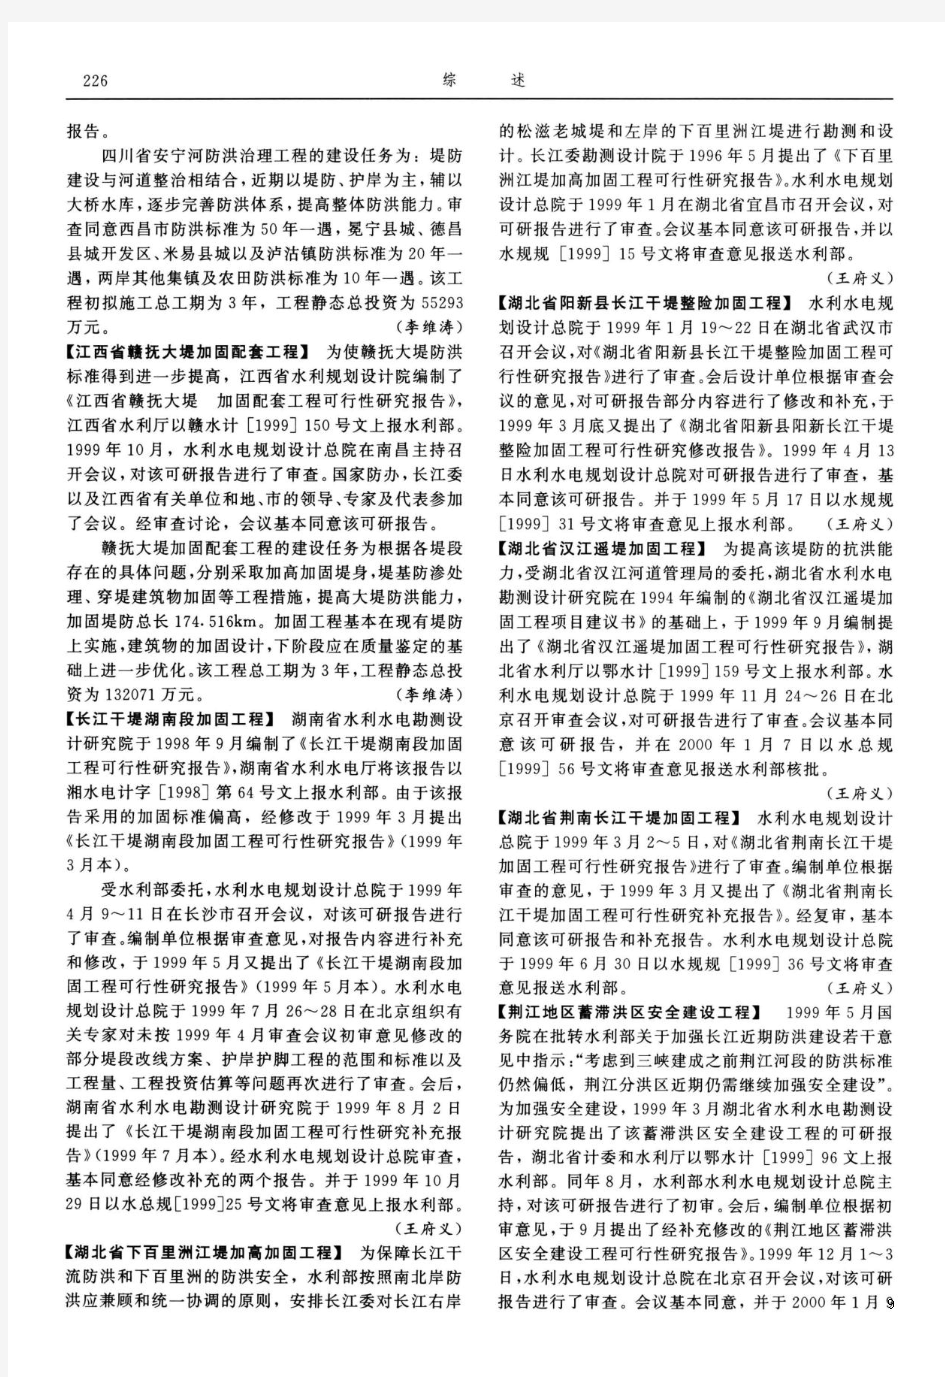 中国水利年鉴2000_综述-勘测规划设计-湖北省阳新县长江干堤整险加固工程